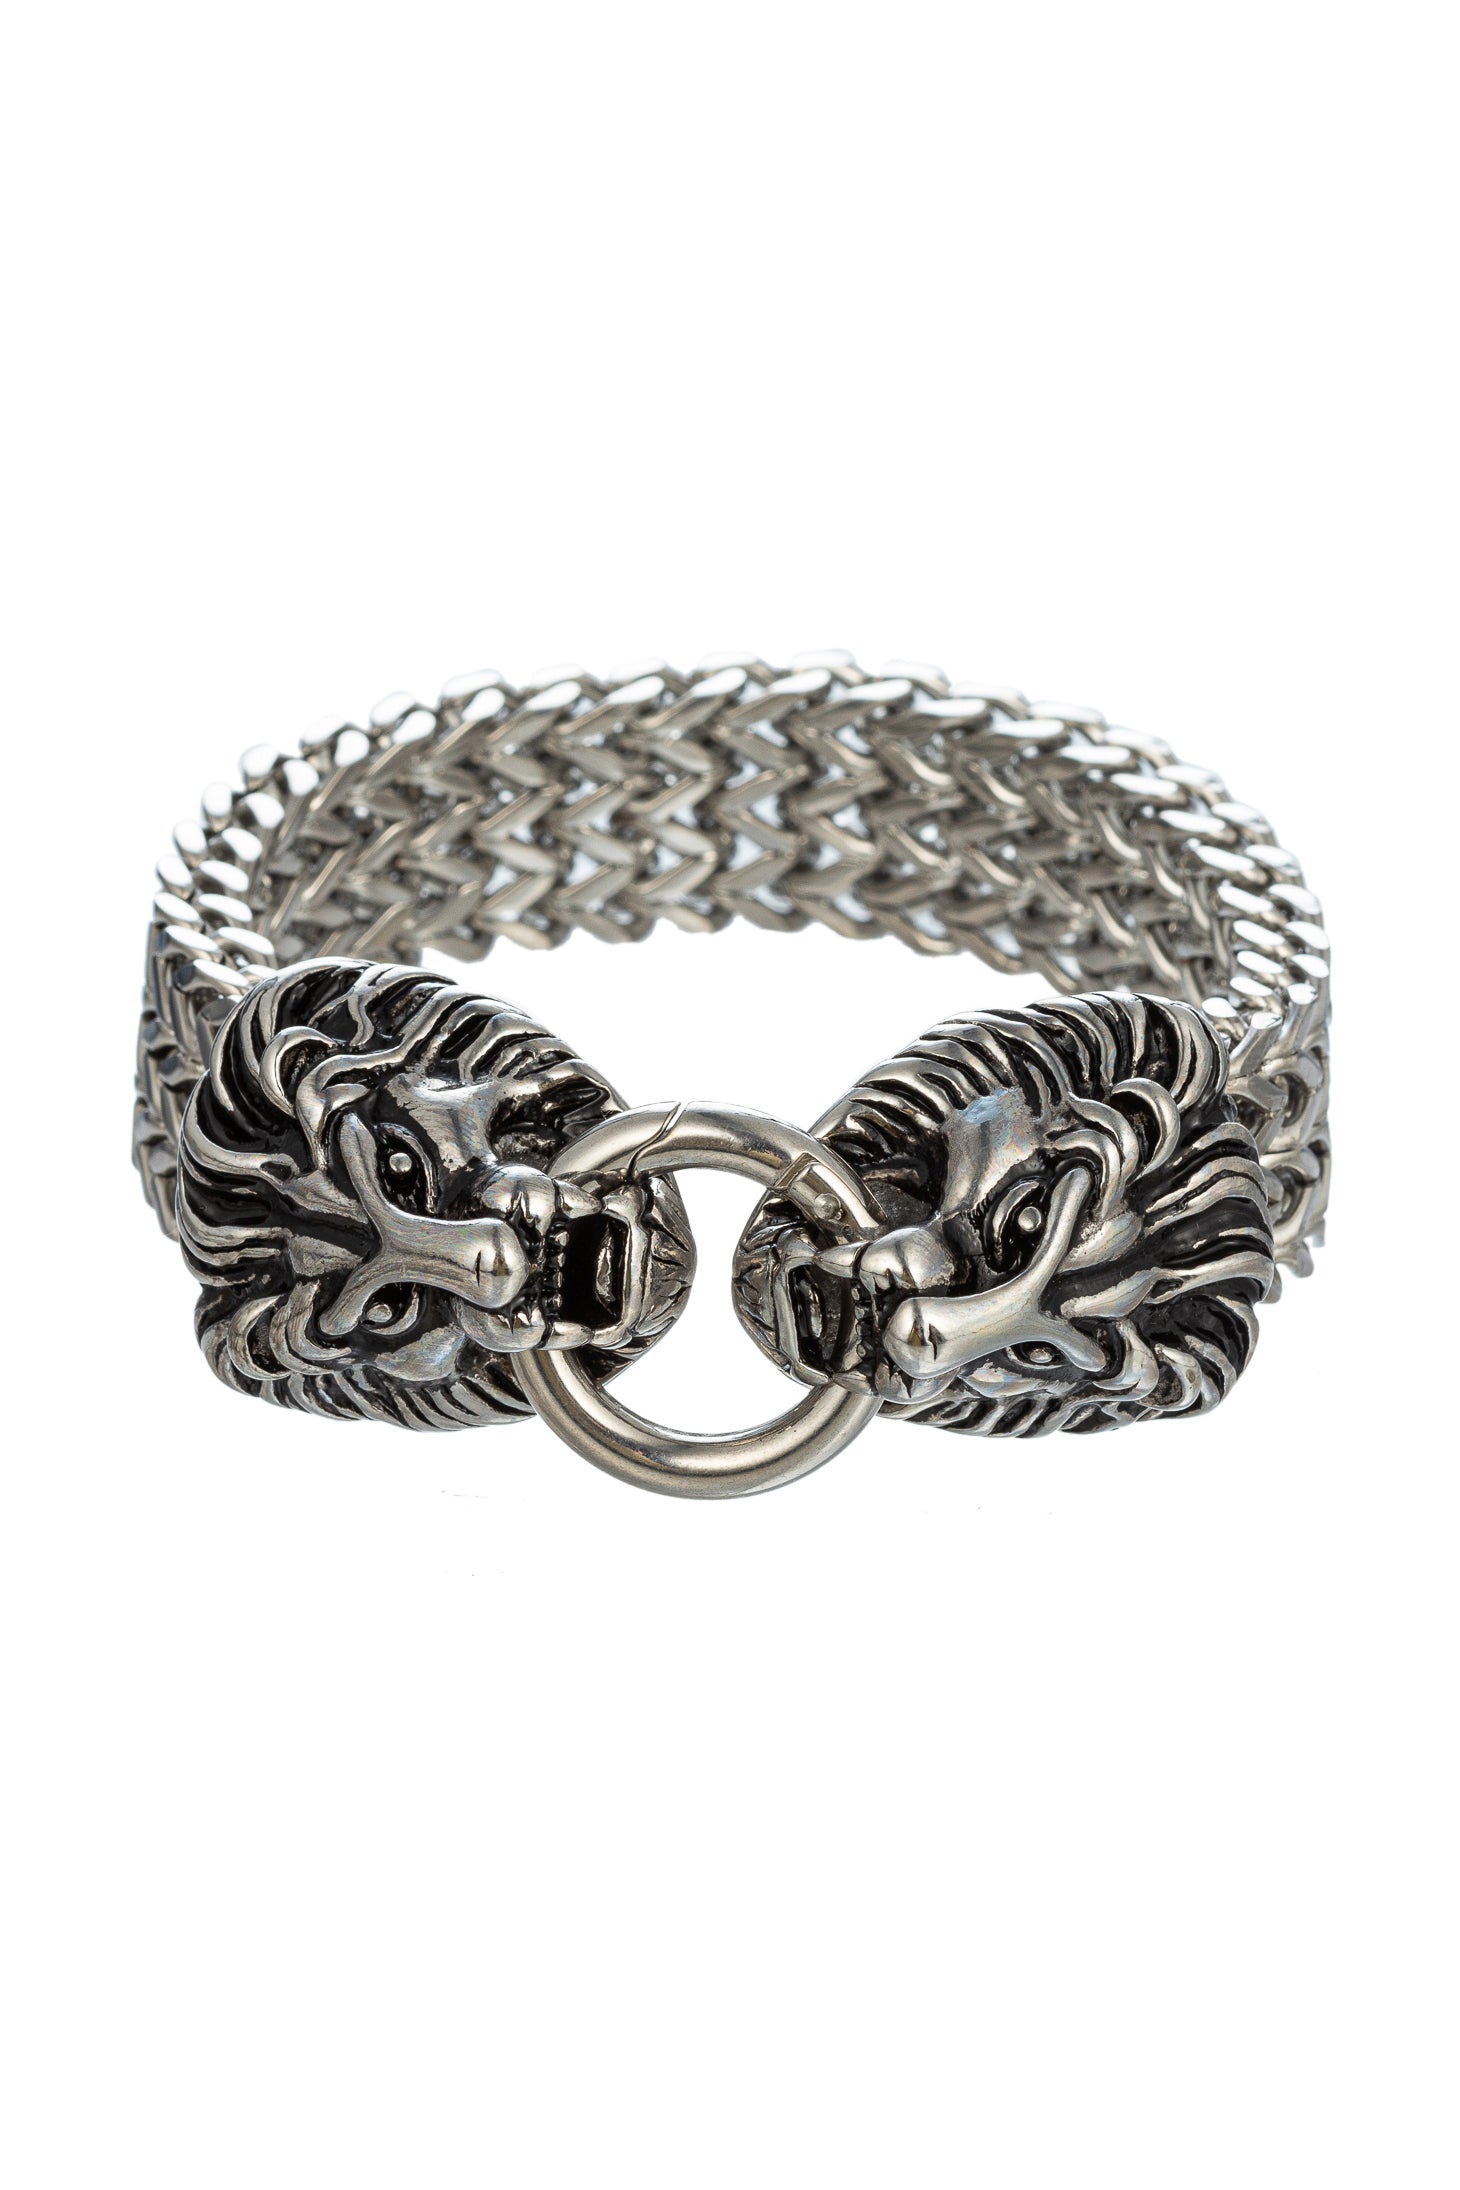 Retro Stainless Steel Lion Head Franco Curb Chain Bracelet Silver Men's  Women | eBay